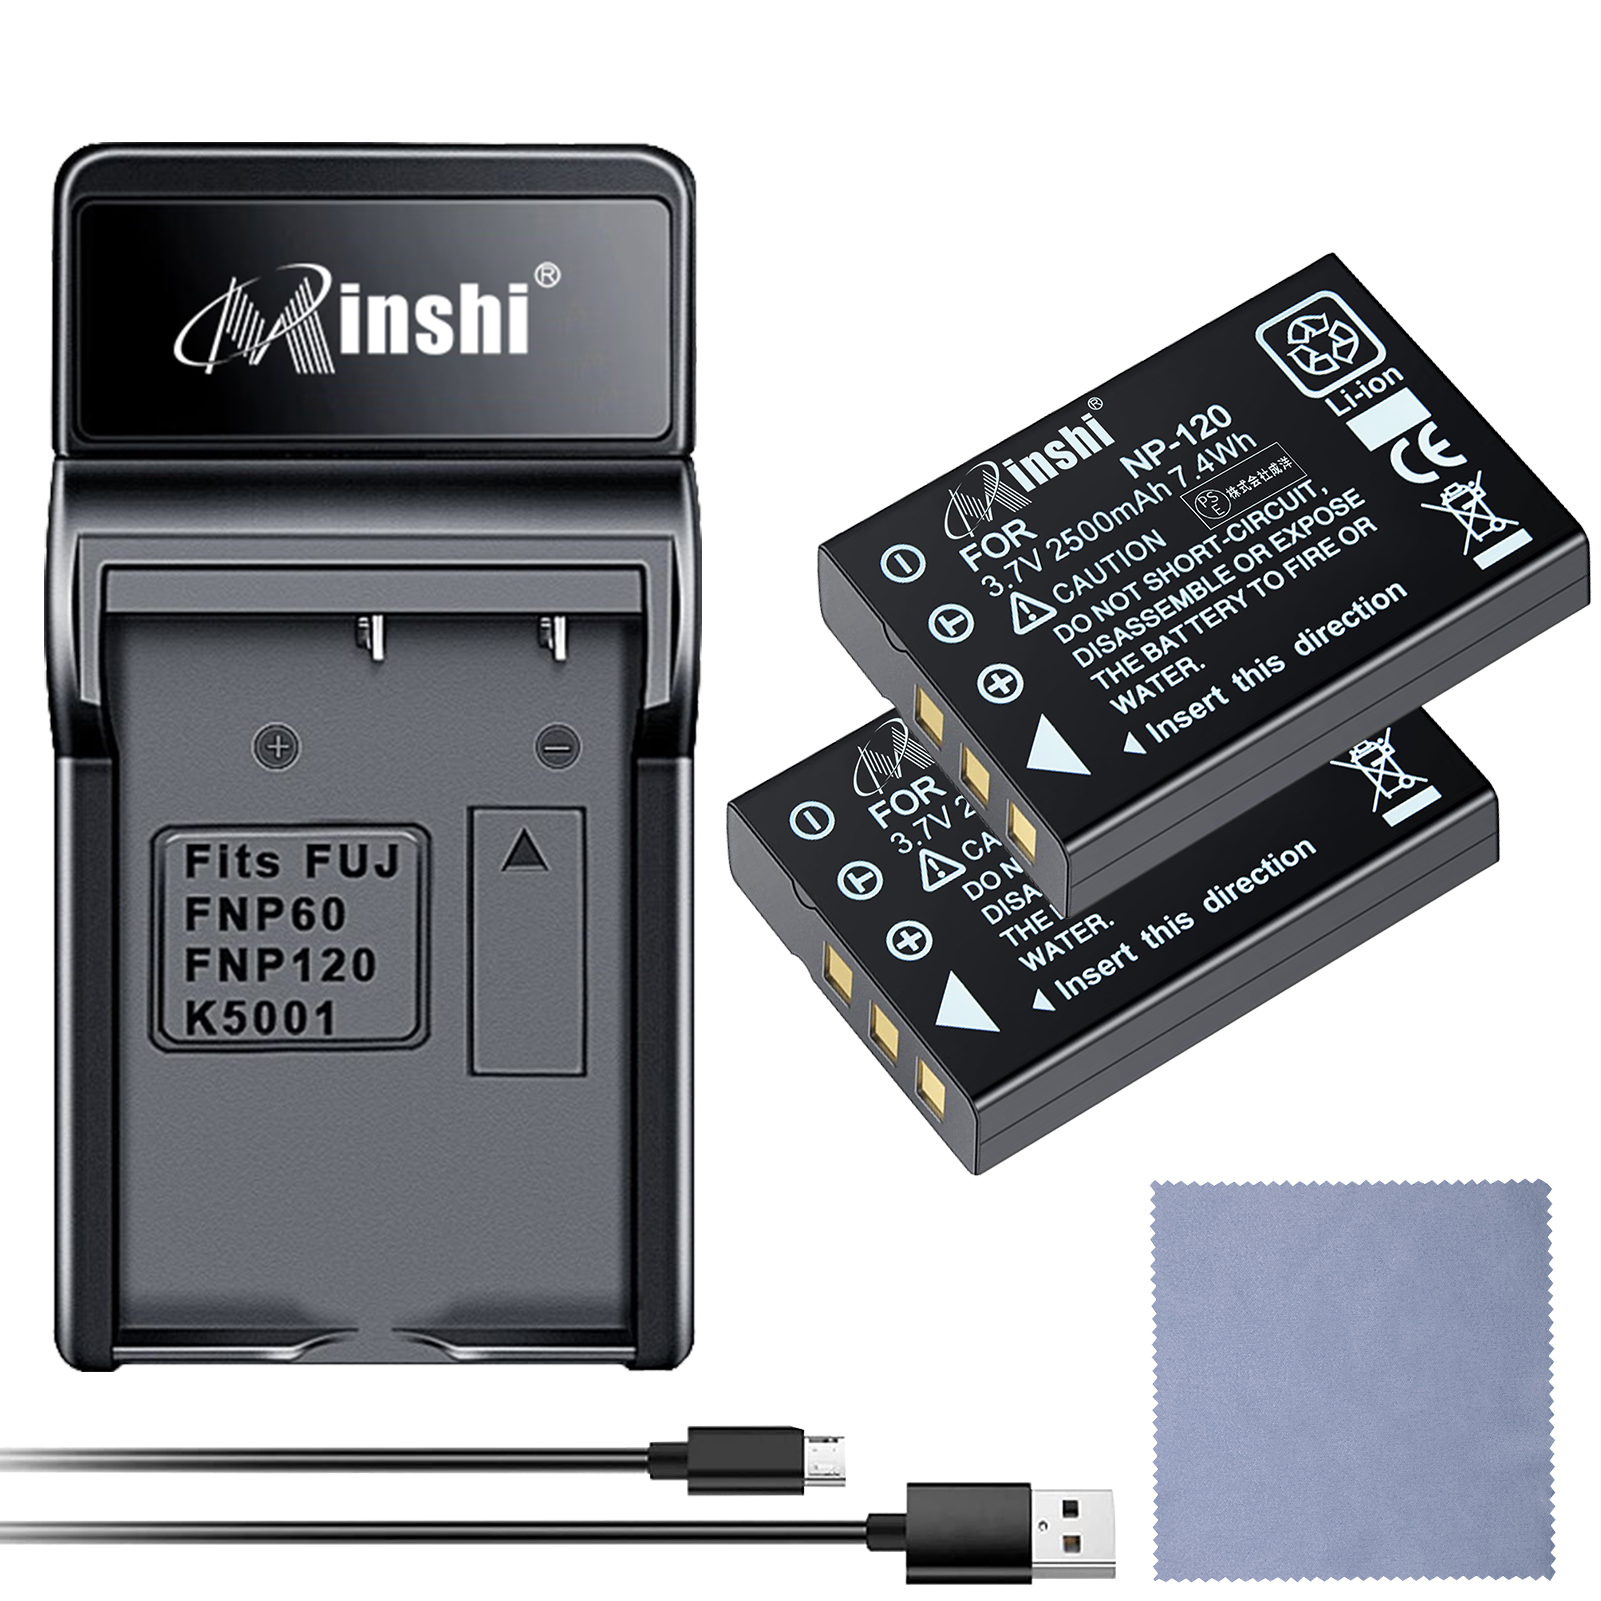 【セット】minshi FUJIFILM Caplio 500G wide NP-120 【2500mAh 3.7V】 高品質交換用バッテリー【2個】